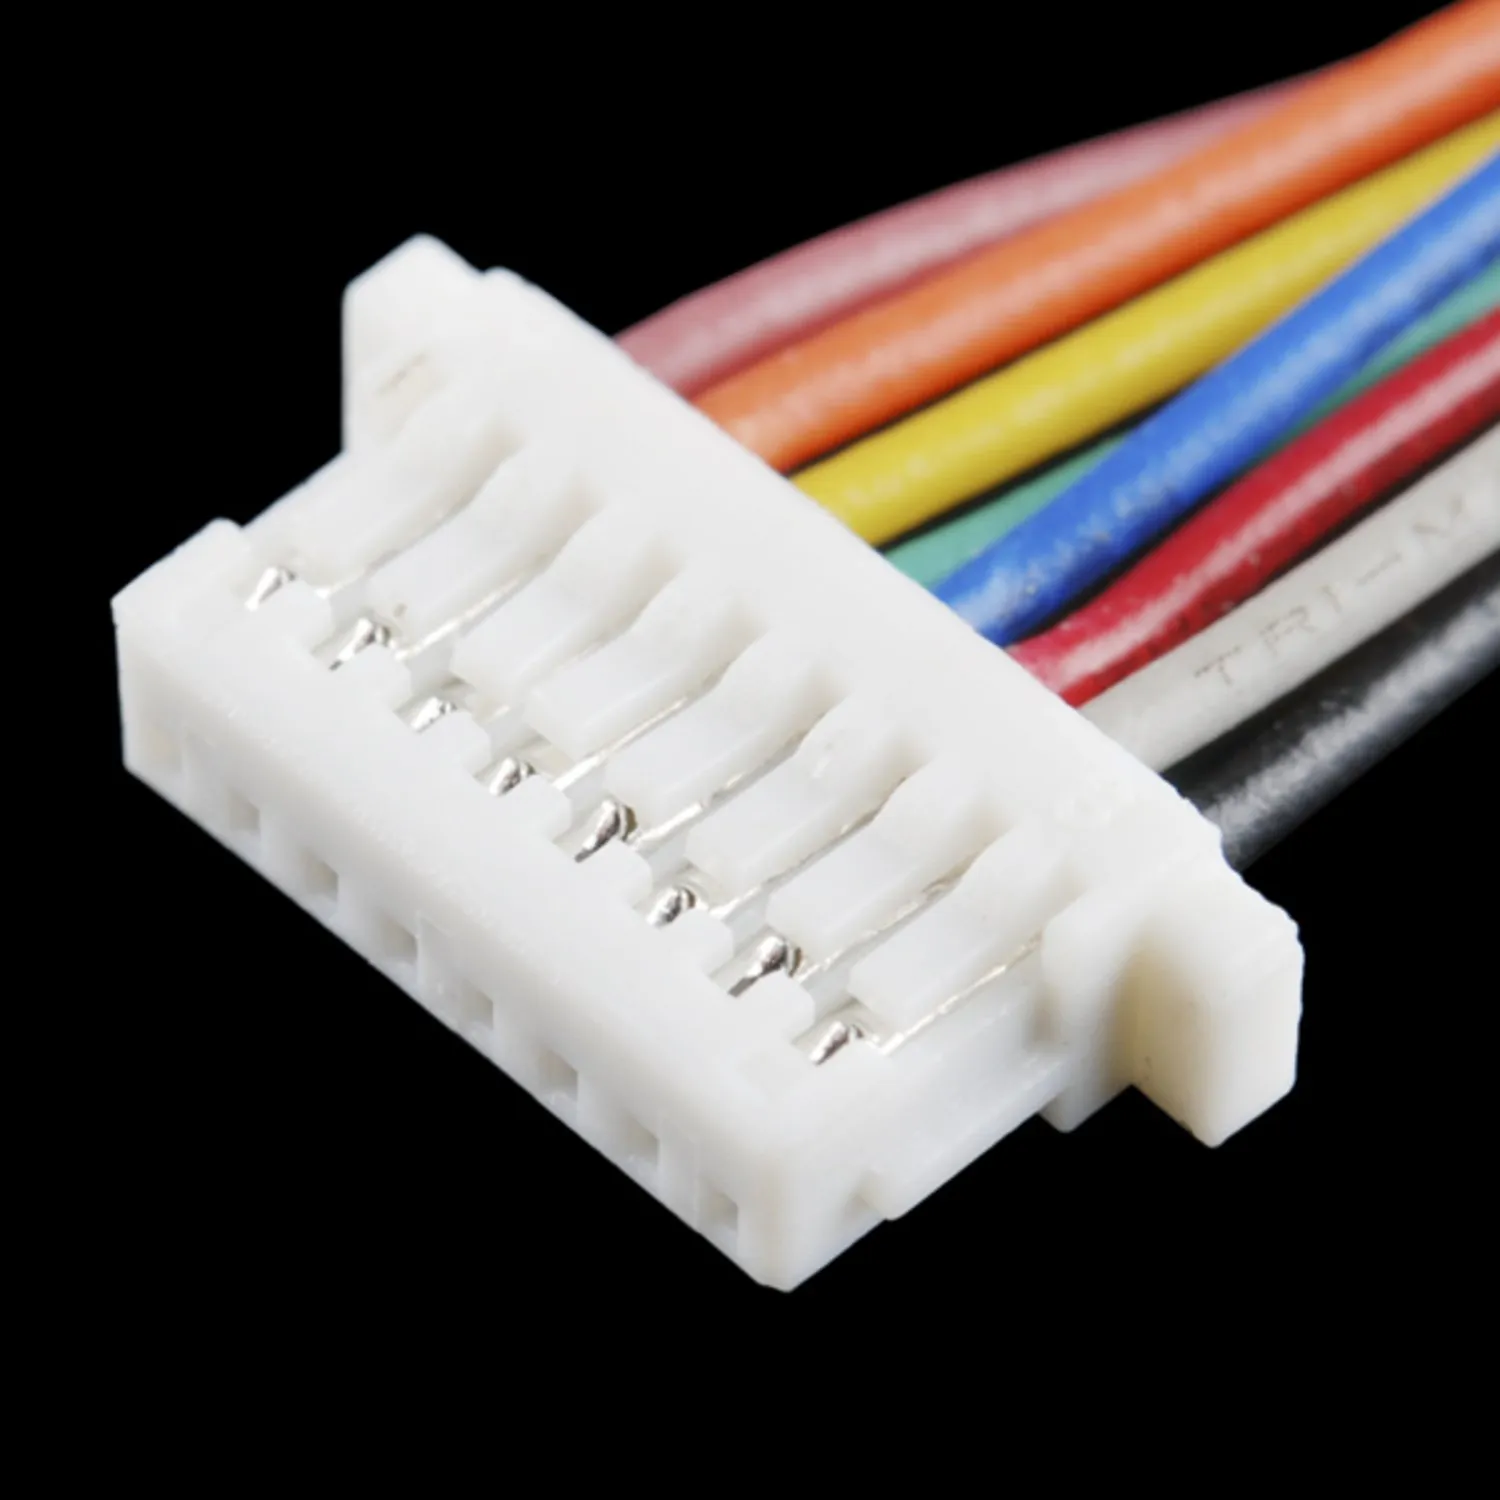 Photo of Mega Pro Mini Cable - 8 (8-wire)